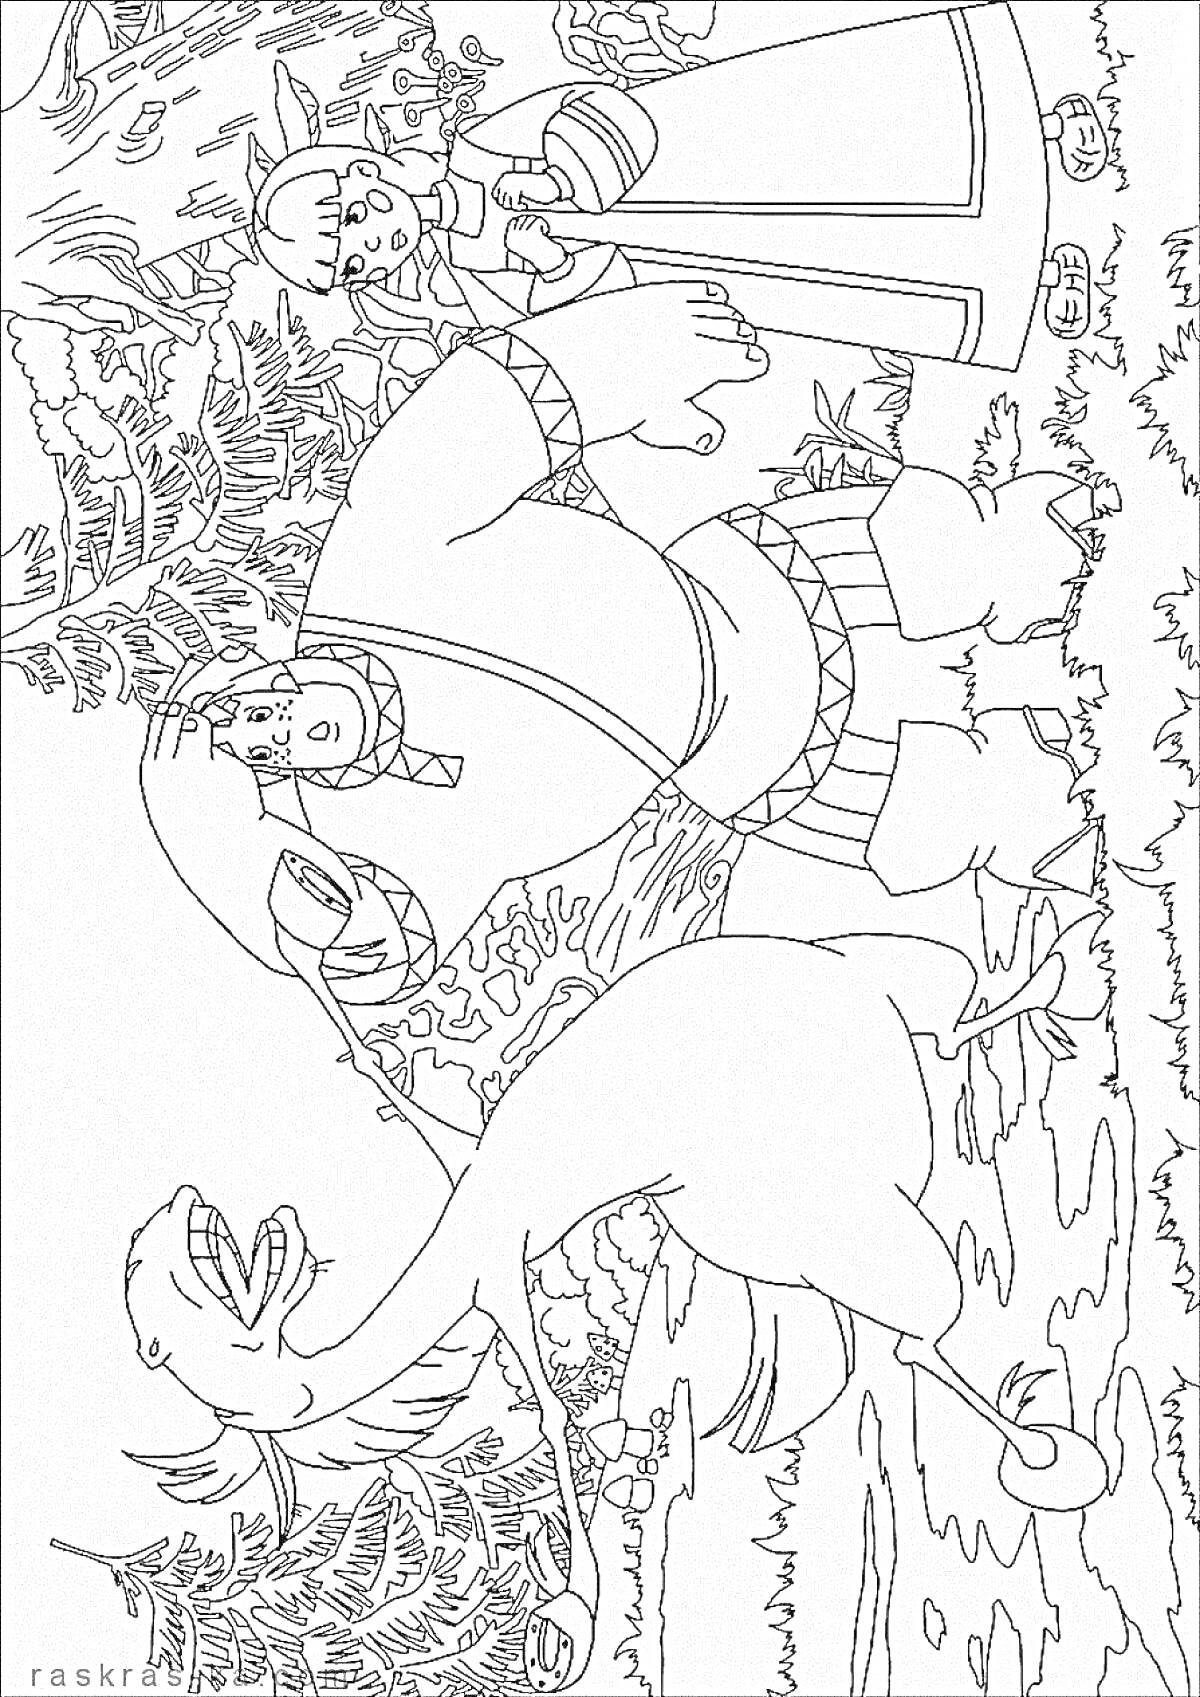 Раскраска Алеша Попович с луком и стрелами, Тугарин Змей, деревья на заднем плане